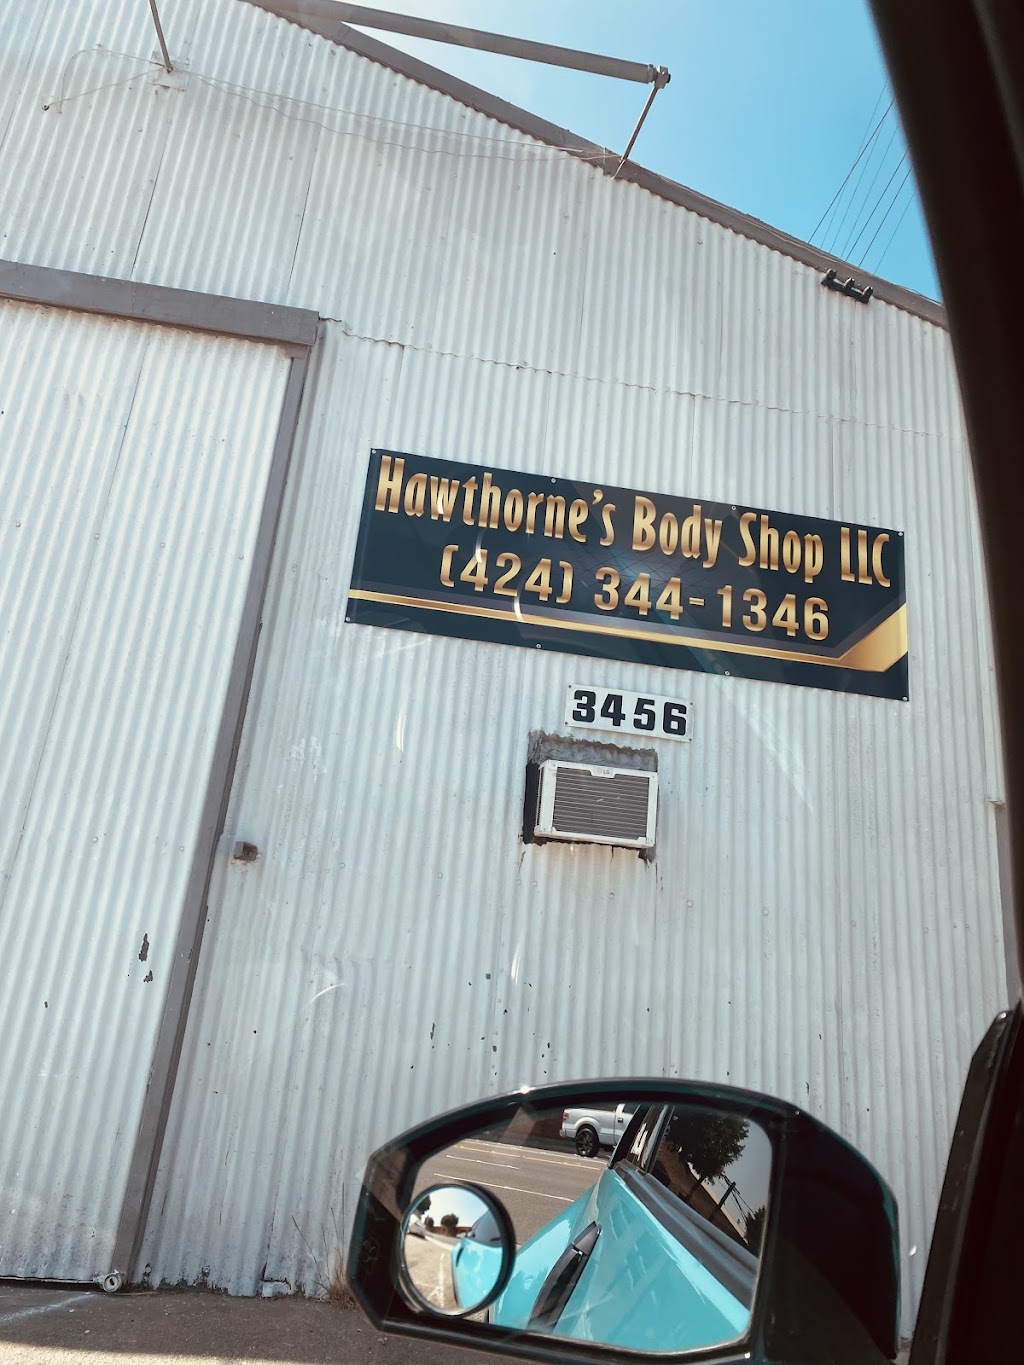 Hawthornes Body Shop LLC | 3456 W El Segundo Blvd, Hawthorne, CA 90250, USA | Phone: (424) 344-1346